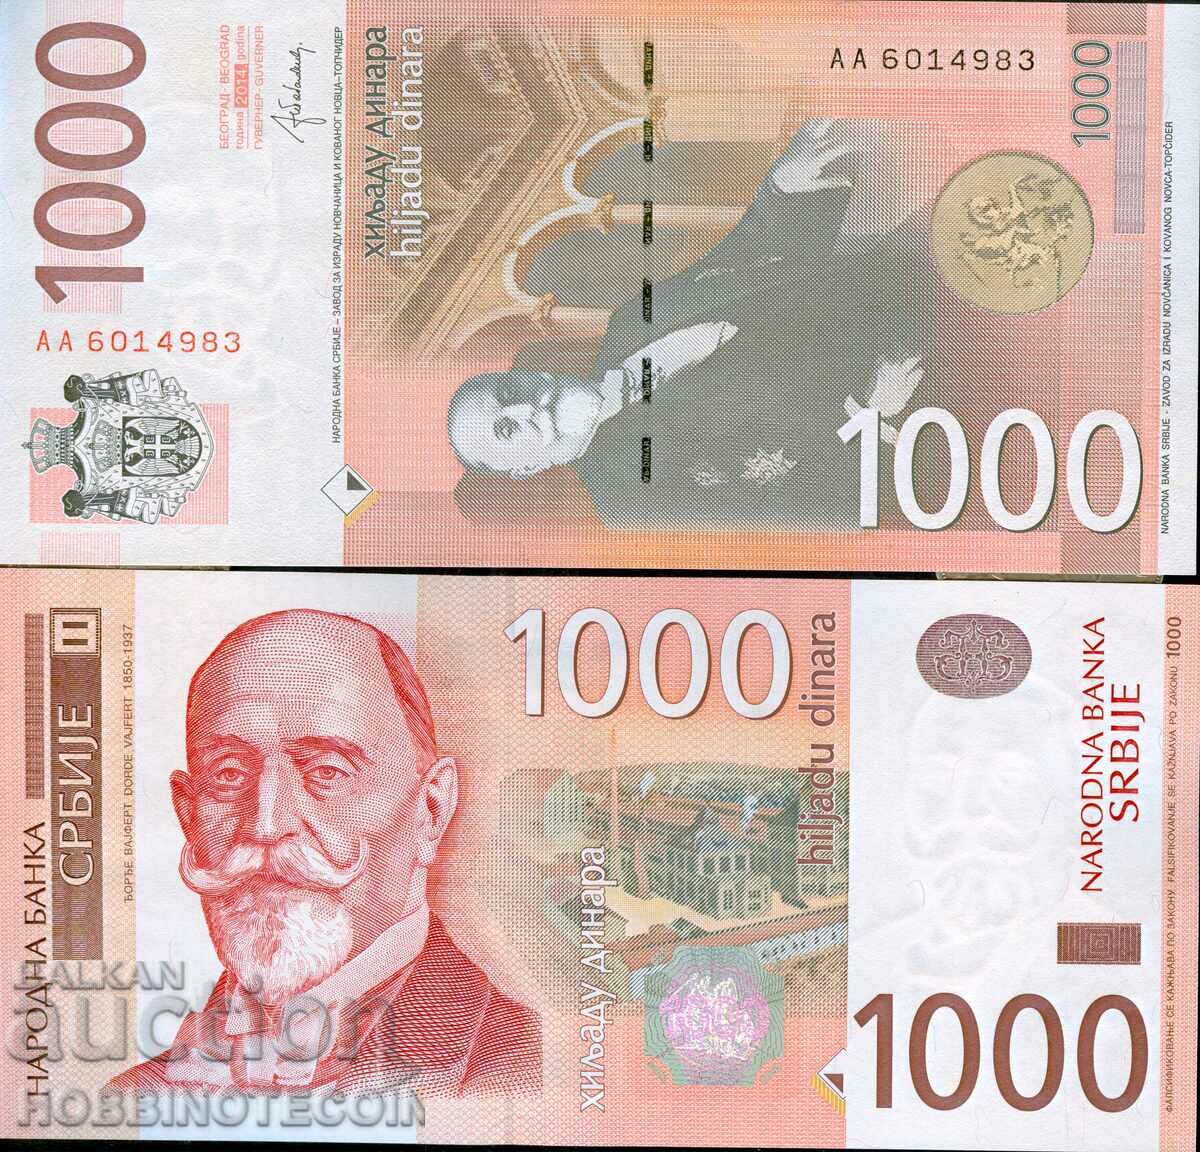 SERBIA SERBIA 1000 - 1000 Dinar έκδοση 2014 NEW UNC